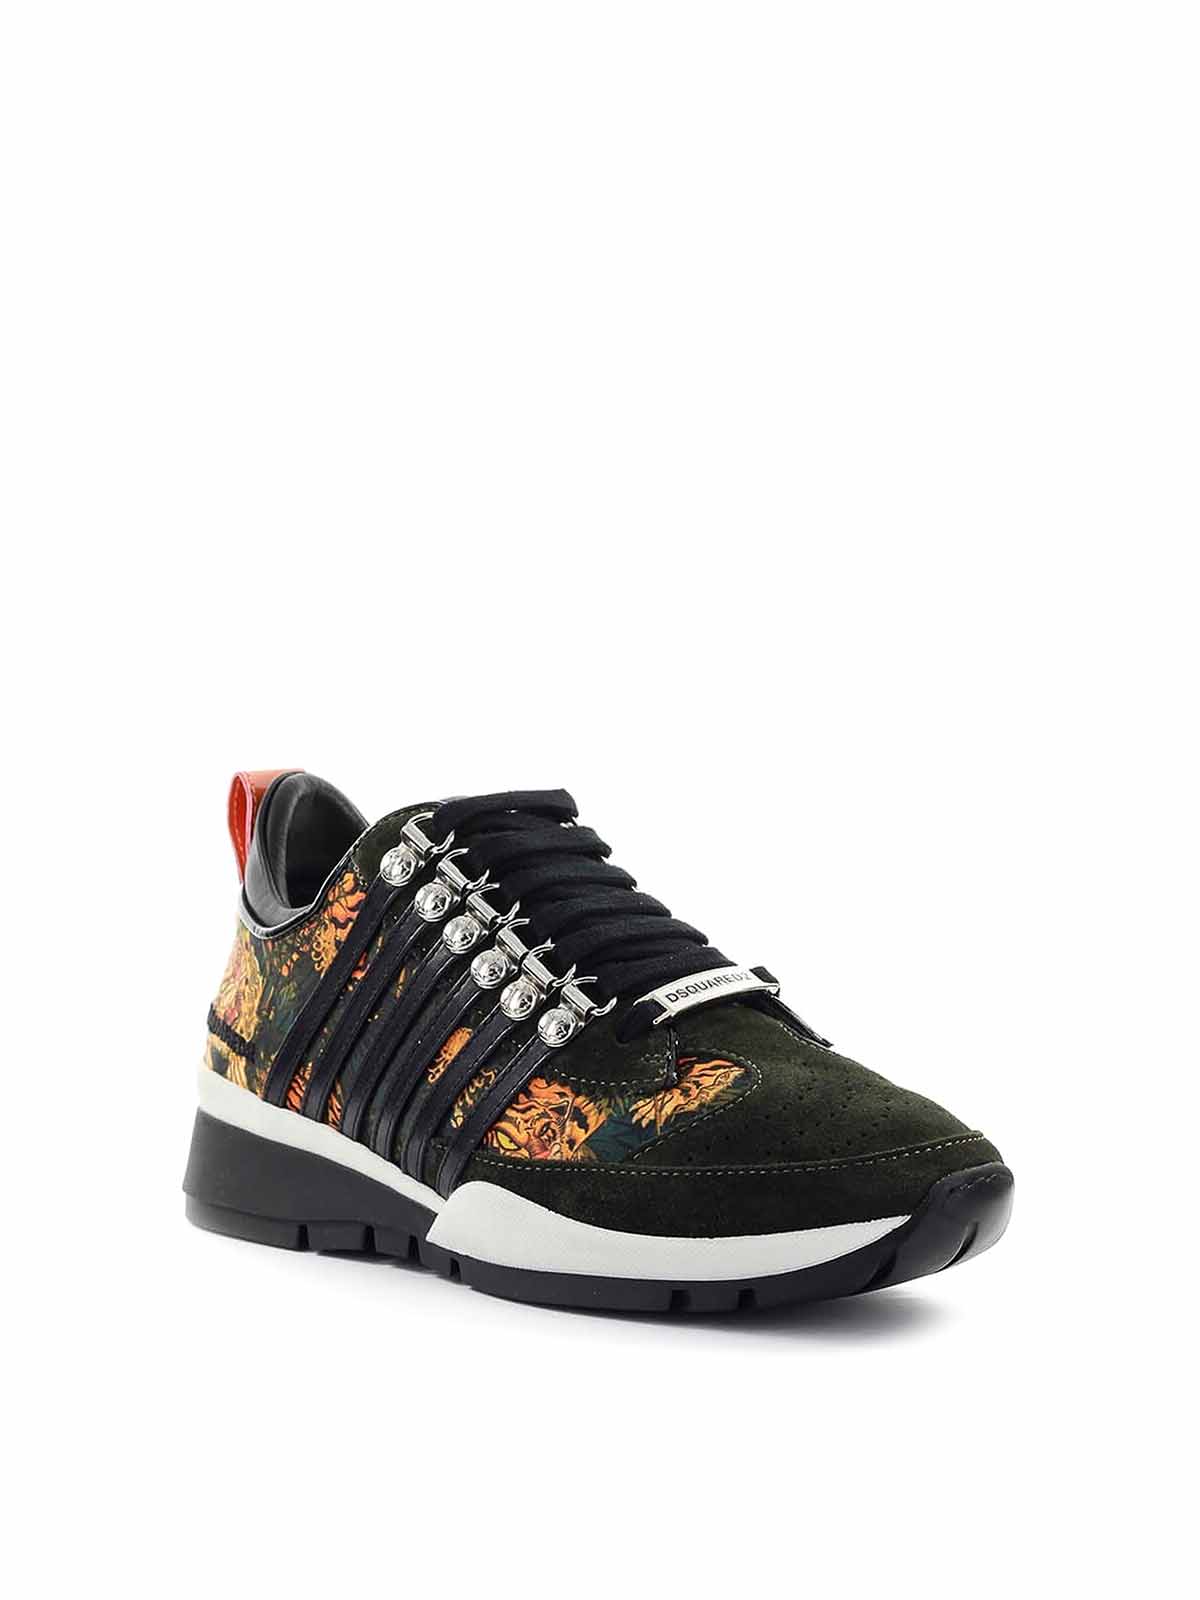 tiger print sneakers